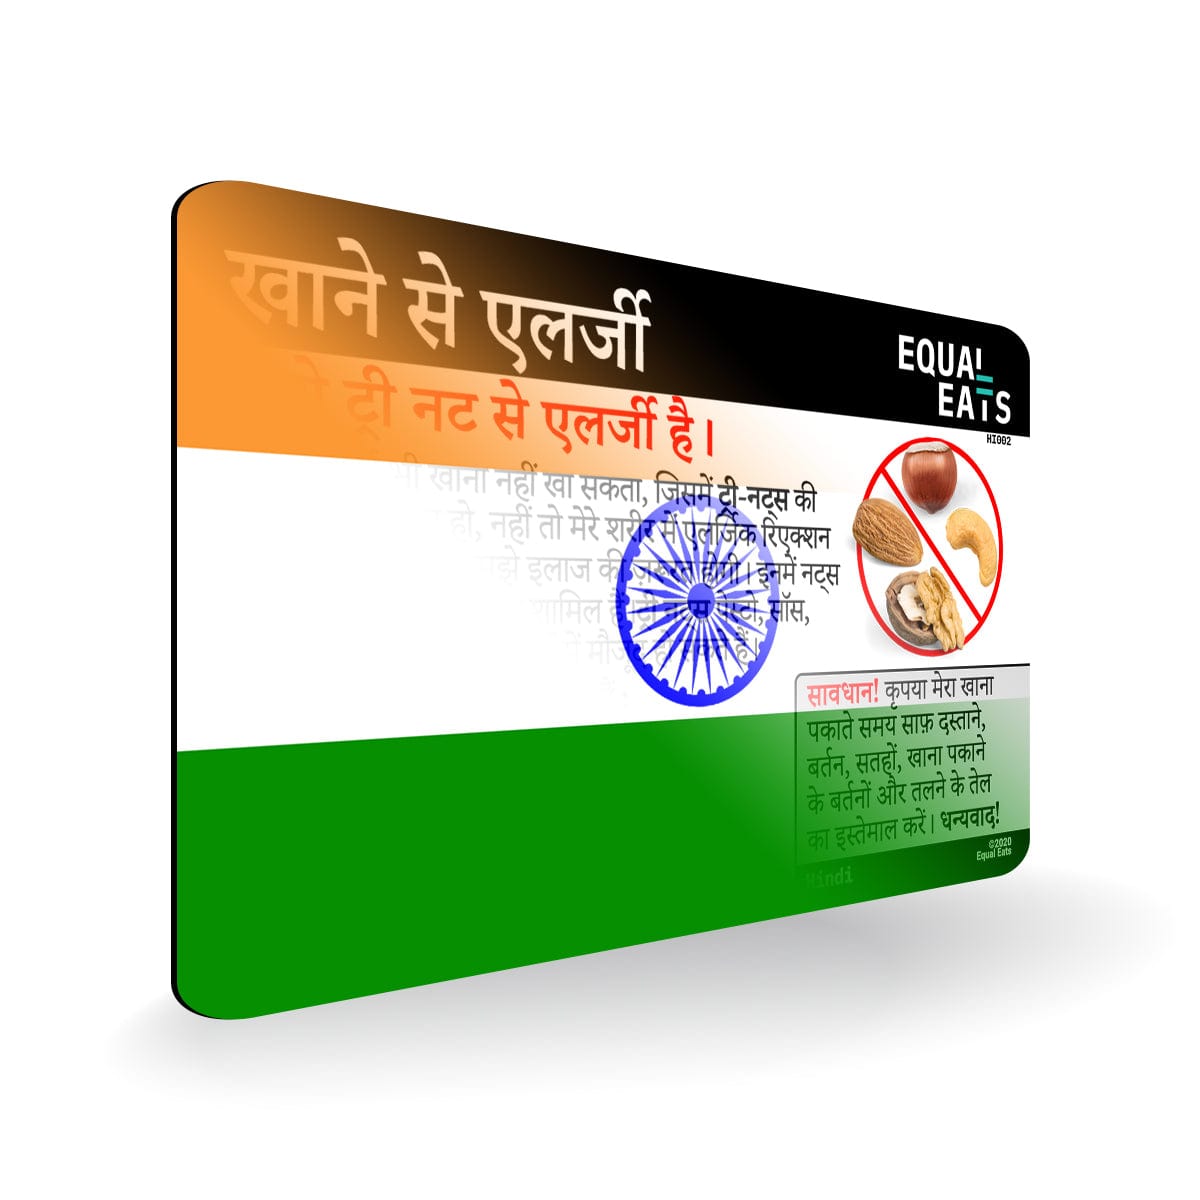 Hindi Tree Nut Allergy Card